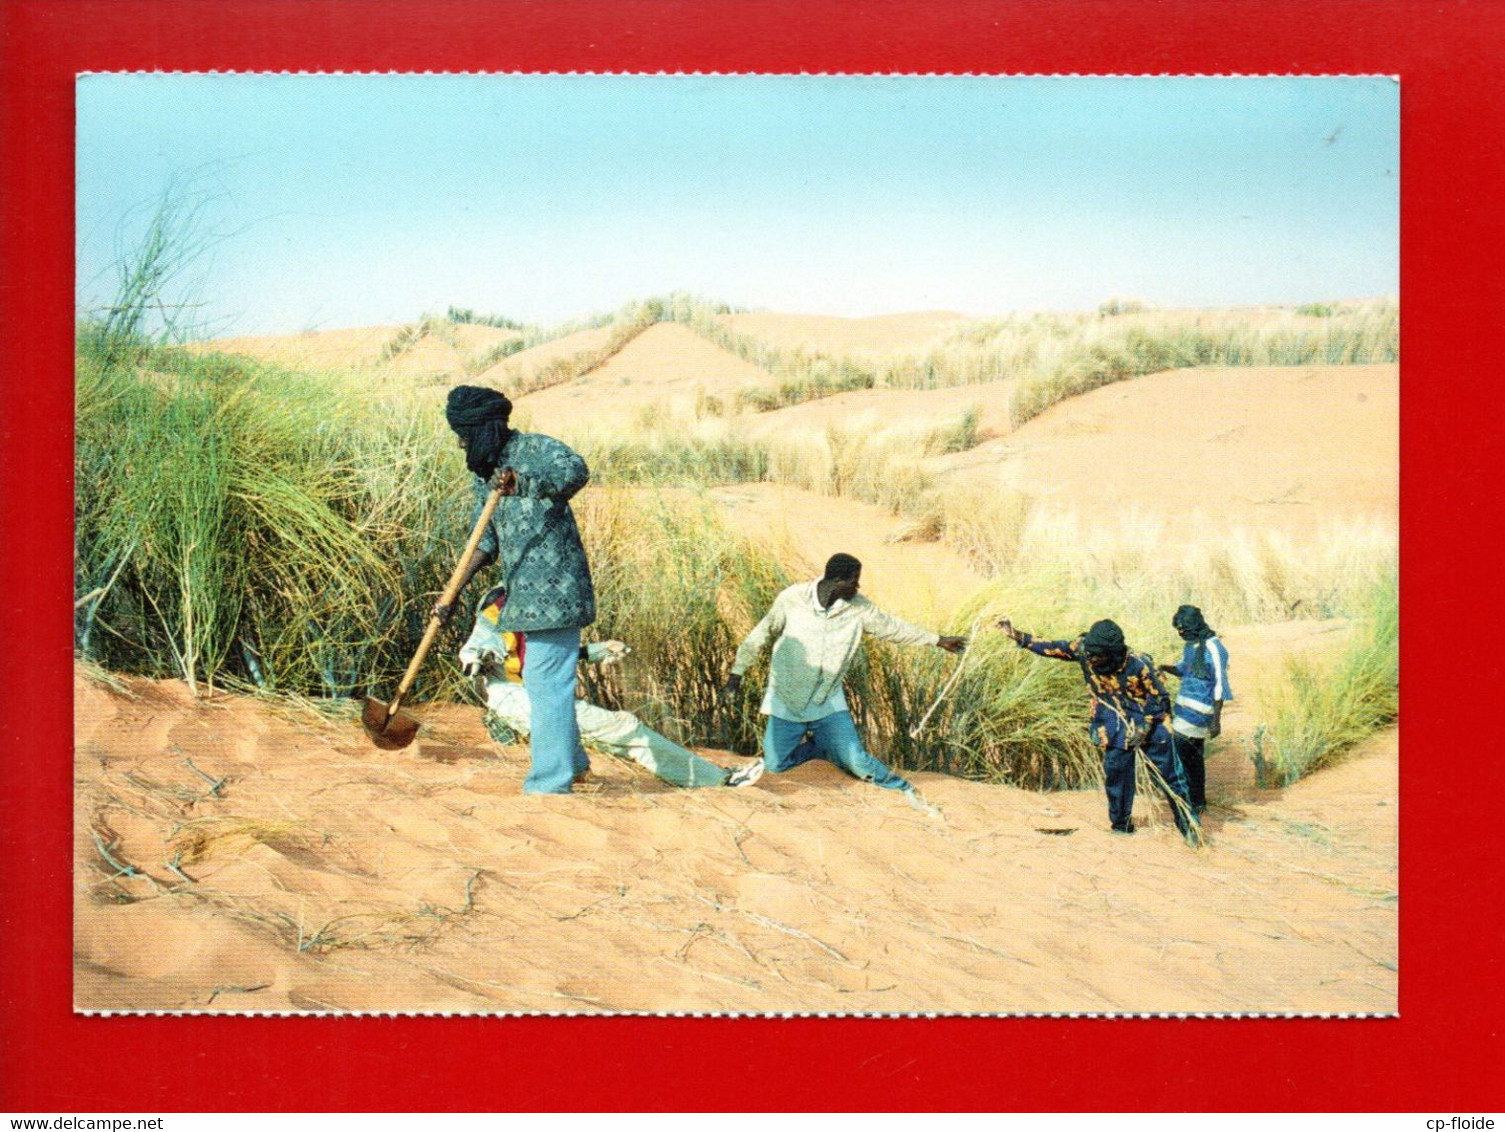 MAURITANIE . SORTIE DE NOUAKCHOFF LES VENTS DE SABLE SONT OMNI PRÉSENTS. L'HOMME DEFIE LE DÉSERT - Ref. N°36795 - - Mauritanie